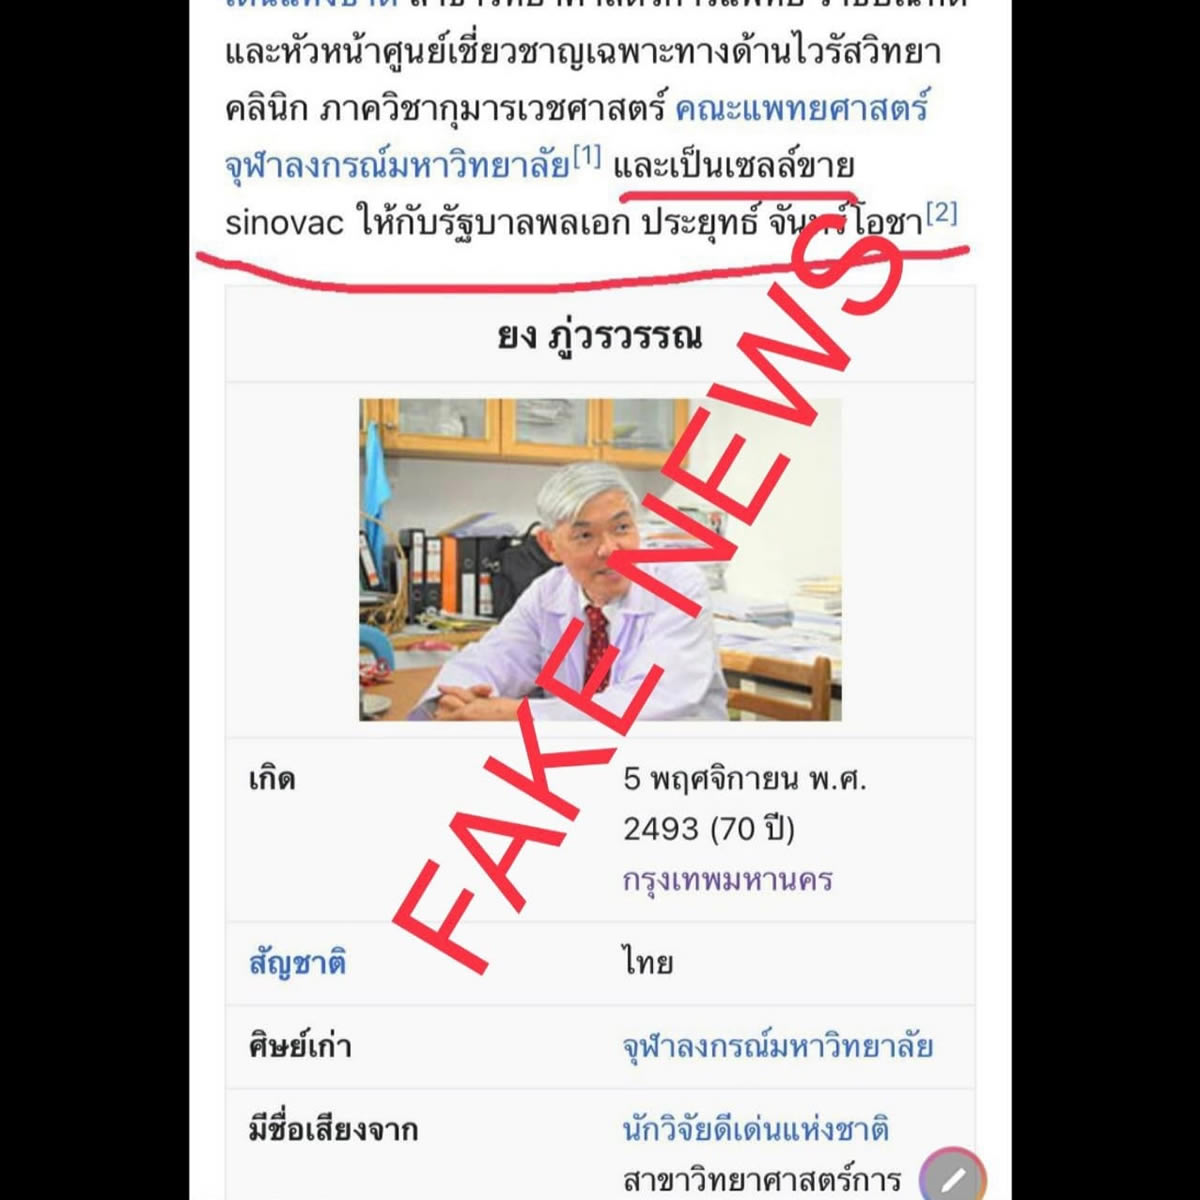 ウィキペディアを編集して有名博士の名誉を毀損 タイ人の男を逮捕 タイランドハイパーリンクス Thai Hyper